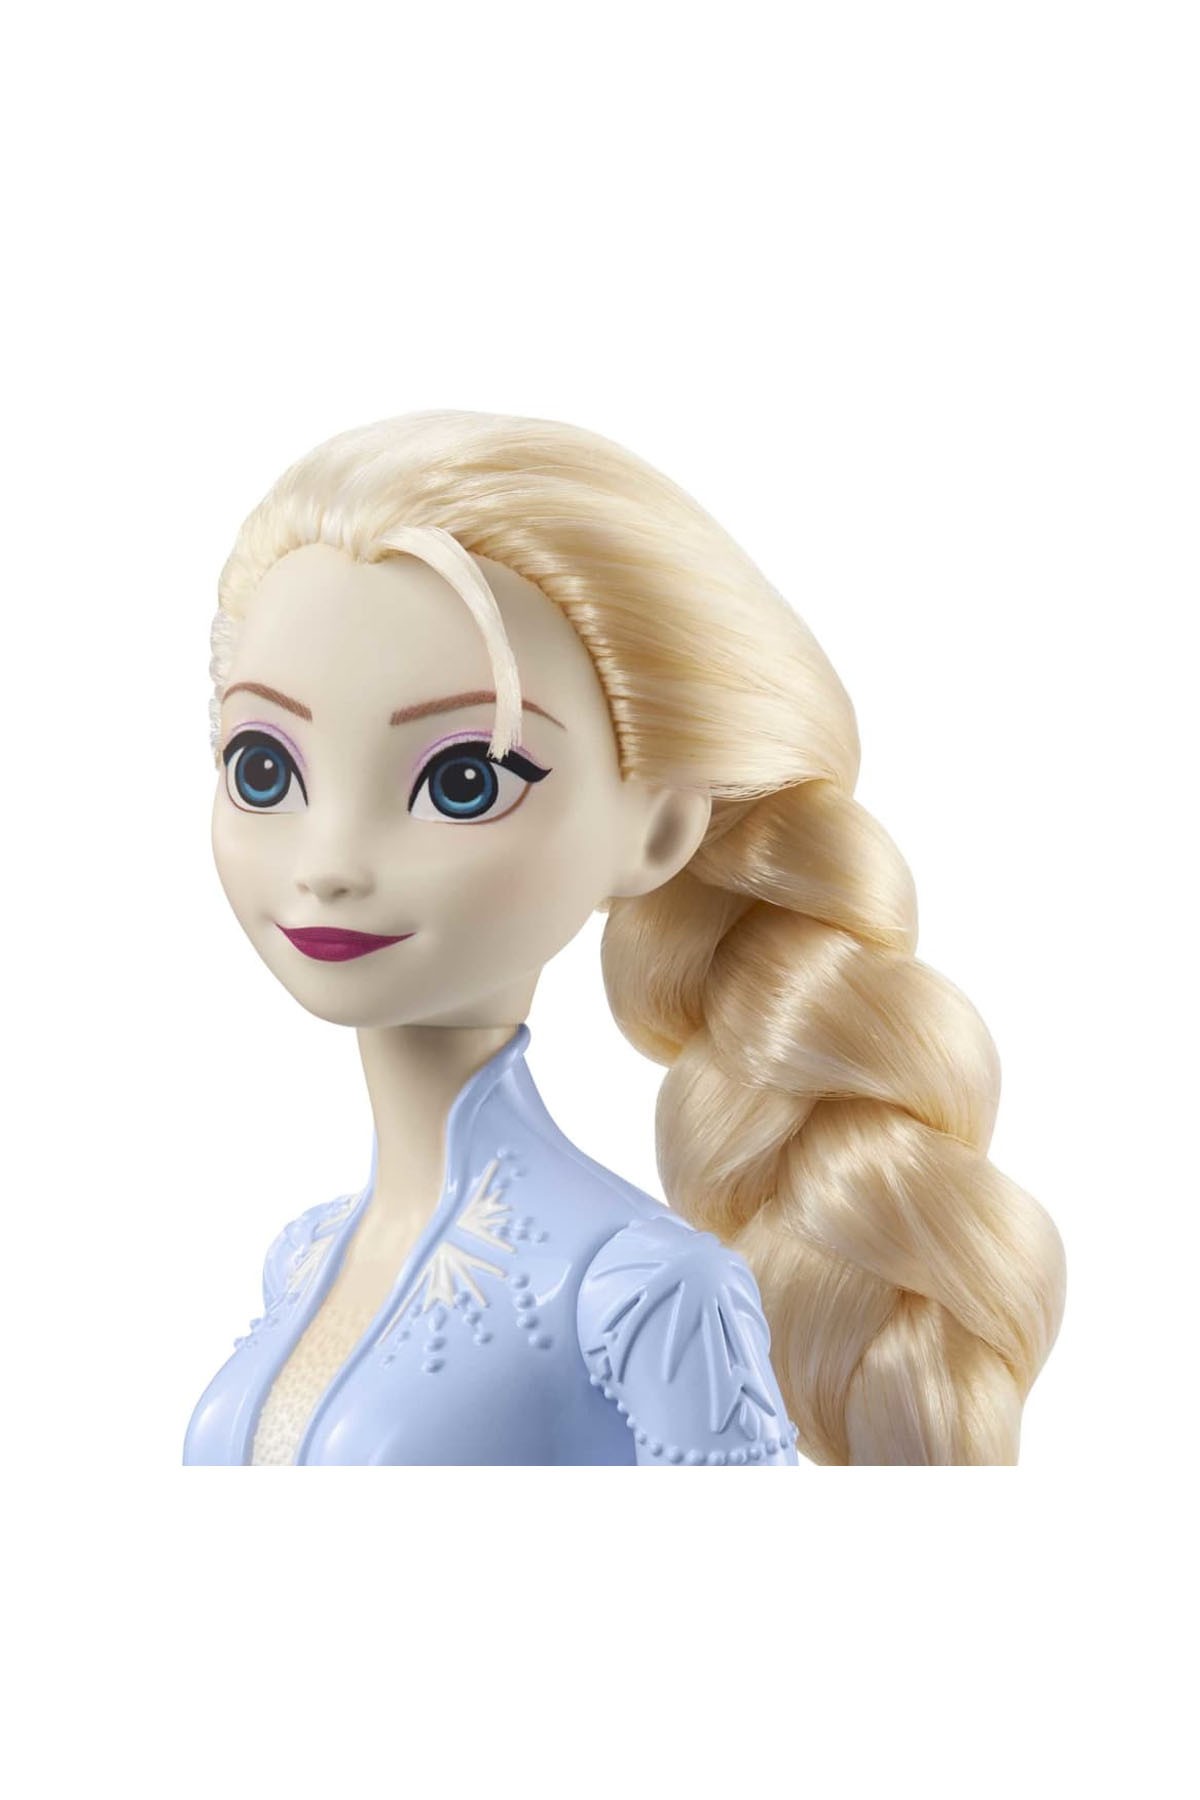 Frozen Disney Karlar Ülkesi Ana Karakter Bebekler Elsa